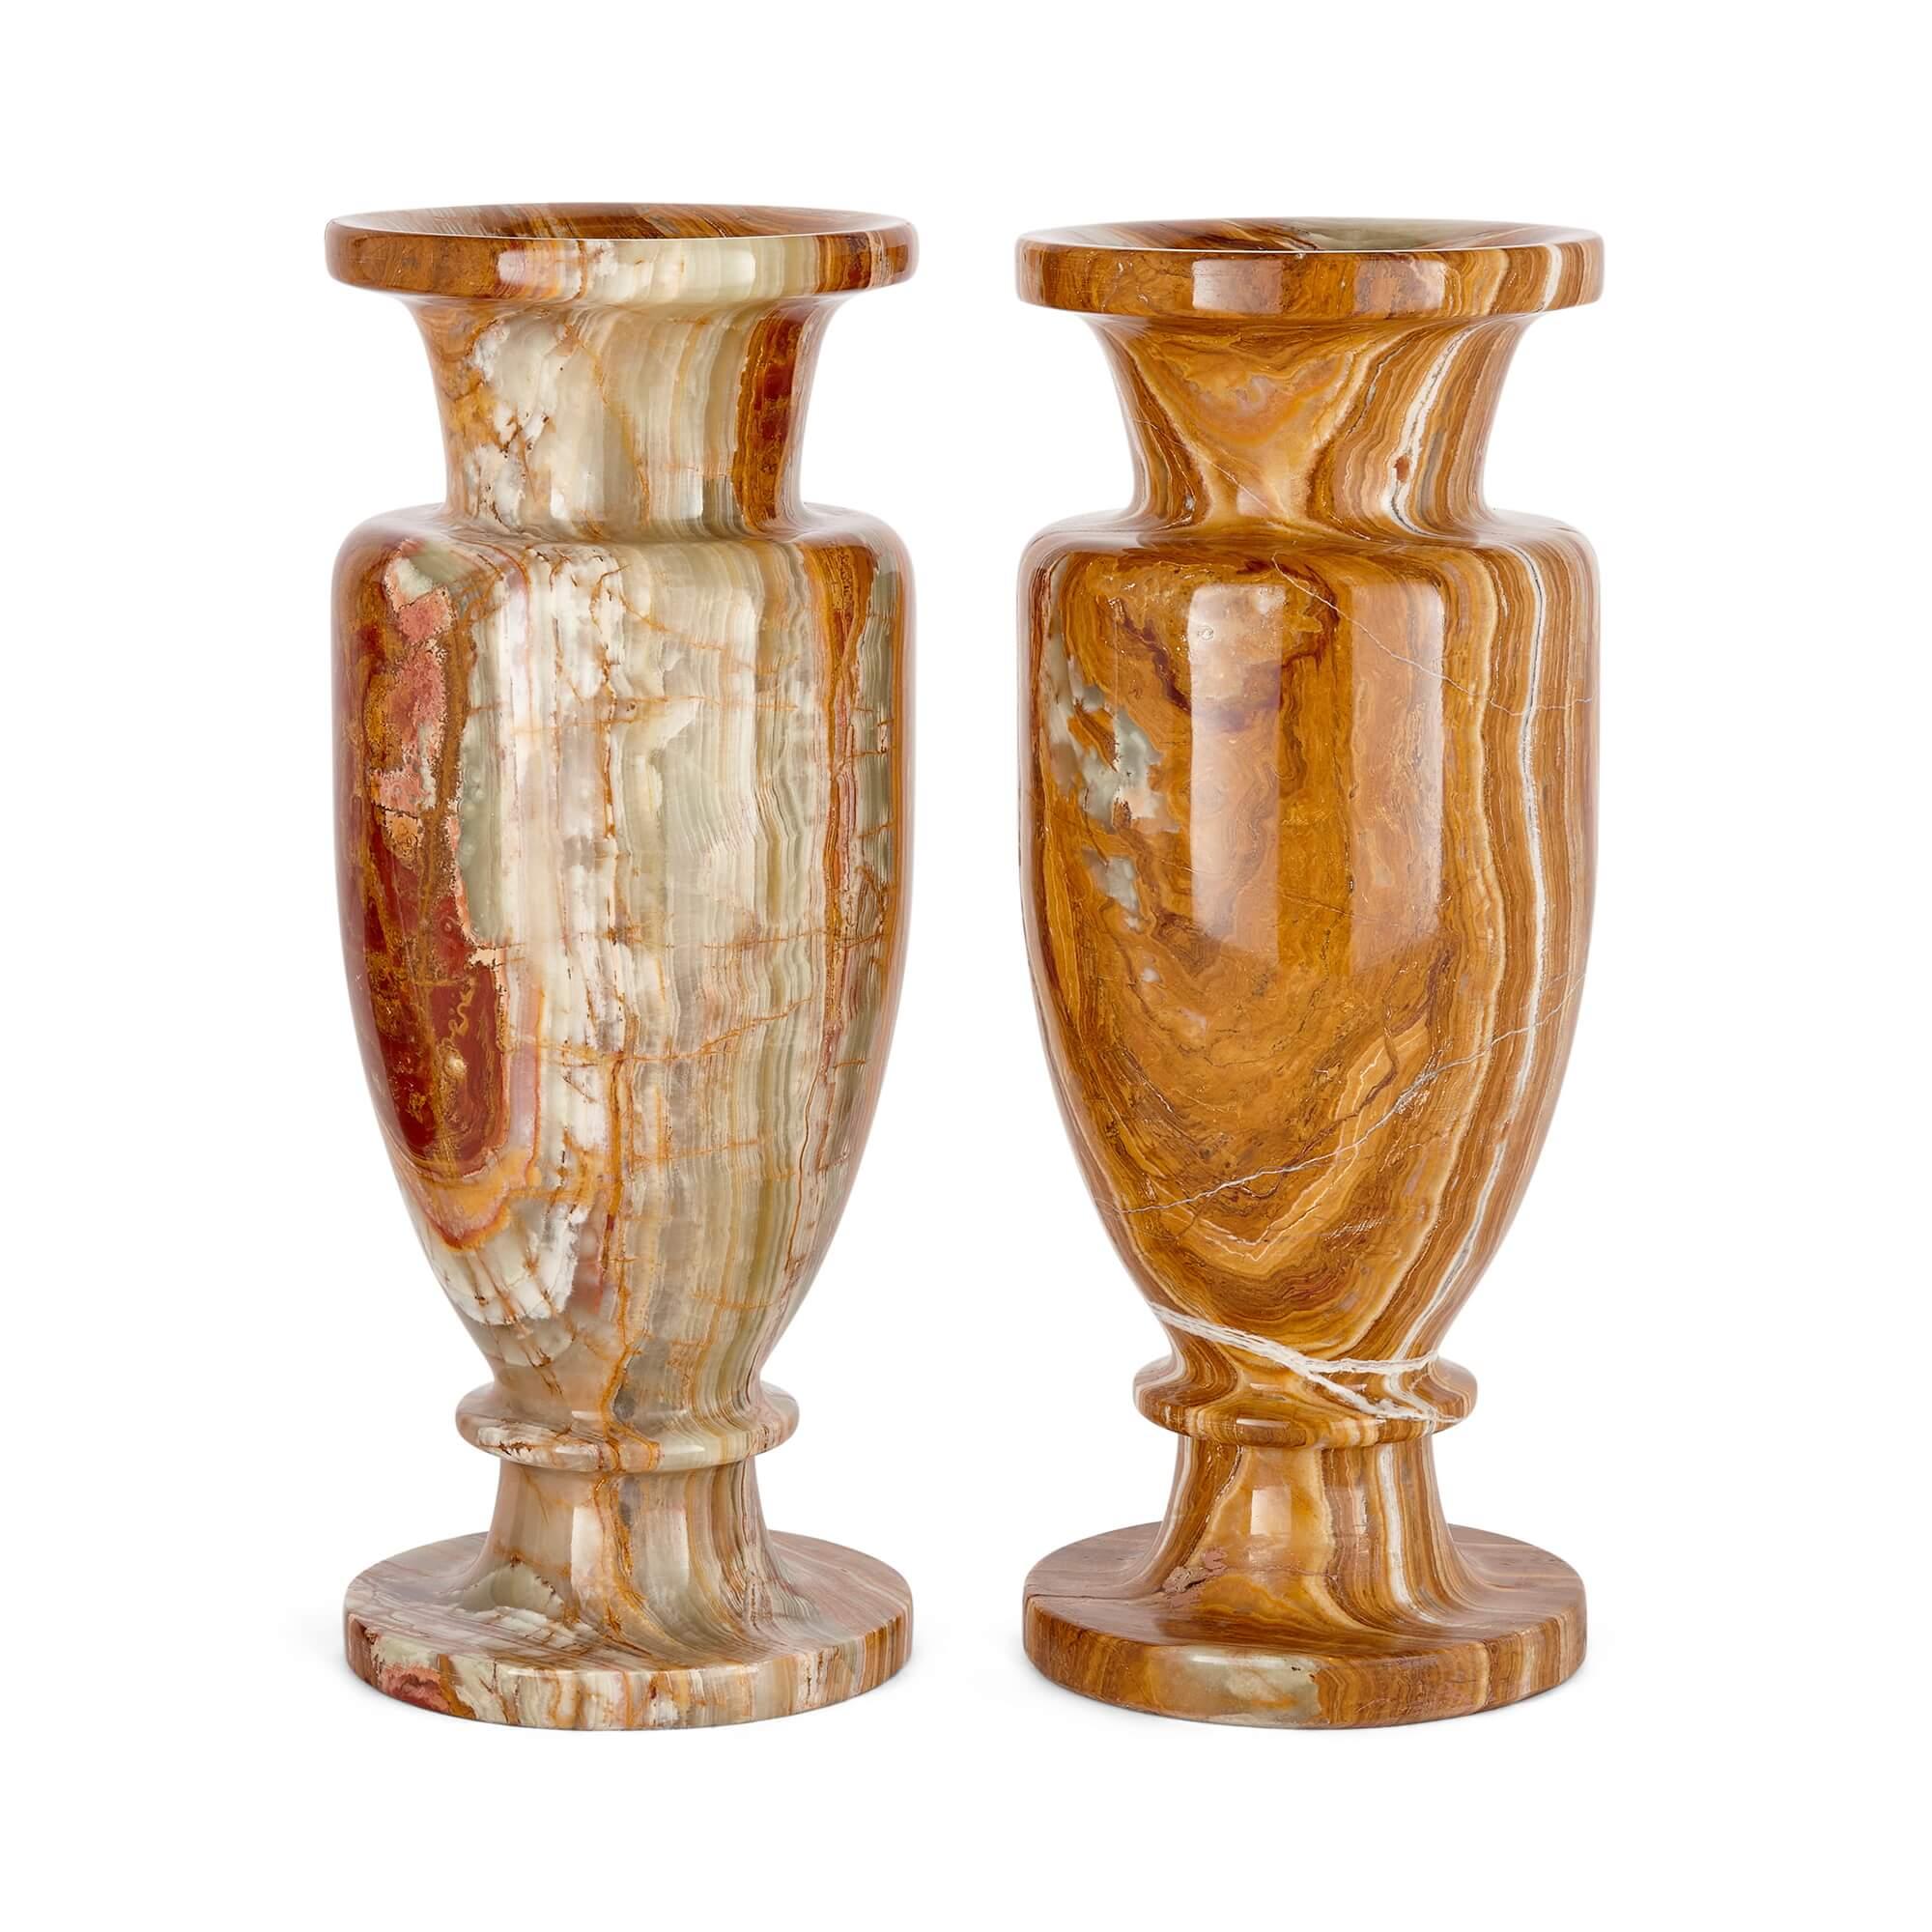 Zwei große dekorative Vasen aus rotem und grünem Onyx
Kontinental, 20. Jahrhundert
Höhe 38cm, Durchmesser 15cm

Die elegant gestalteten und makellos verarbeiteten Vasen sind aus grünem und rotem Onyx geschnitzt, wobei die natürlichen Bänder, Muster